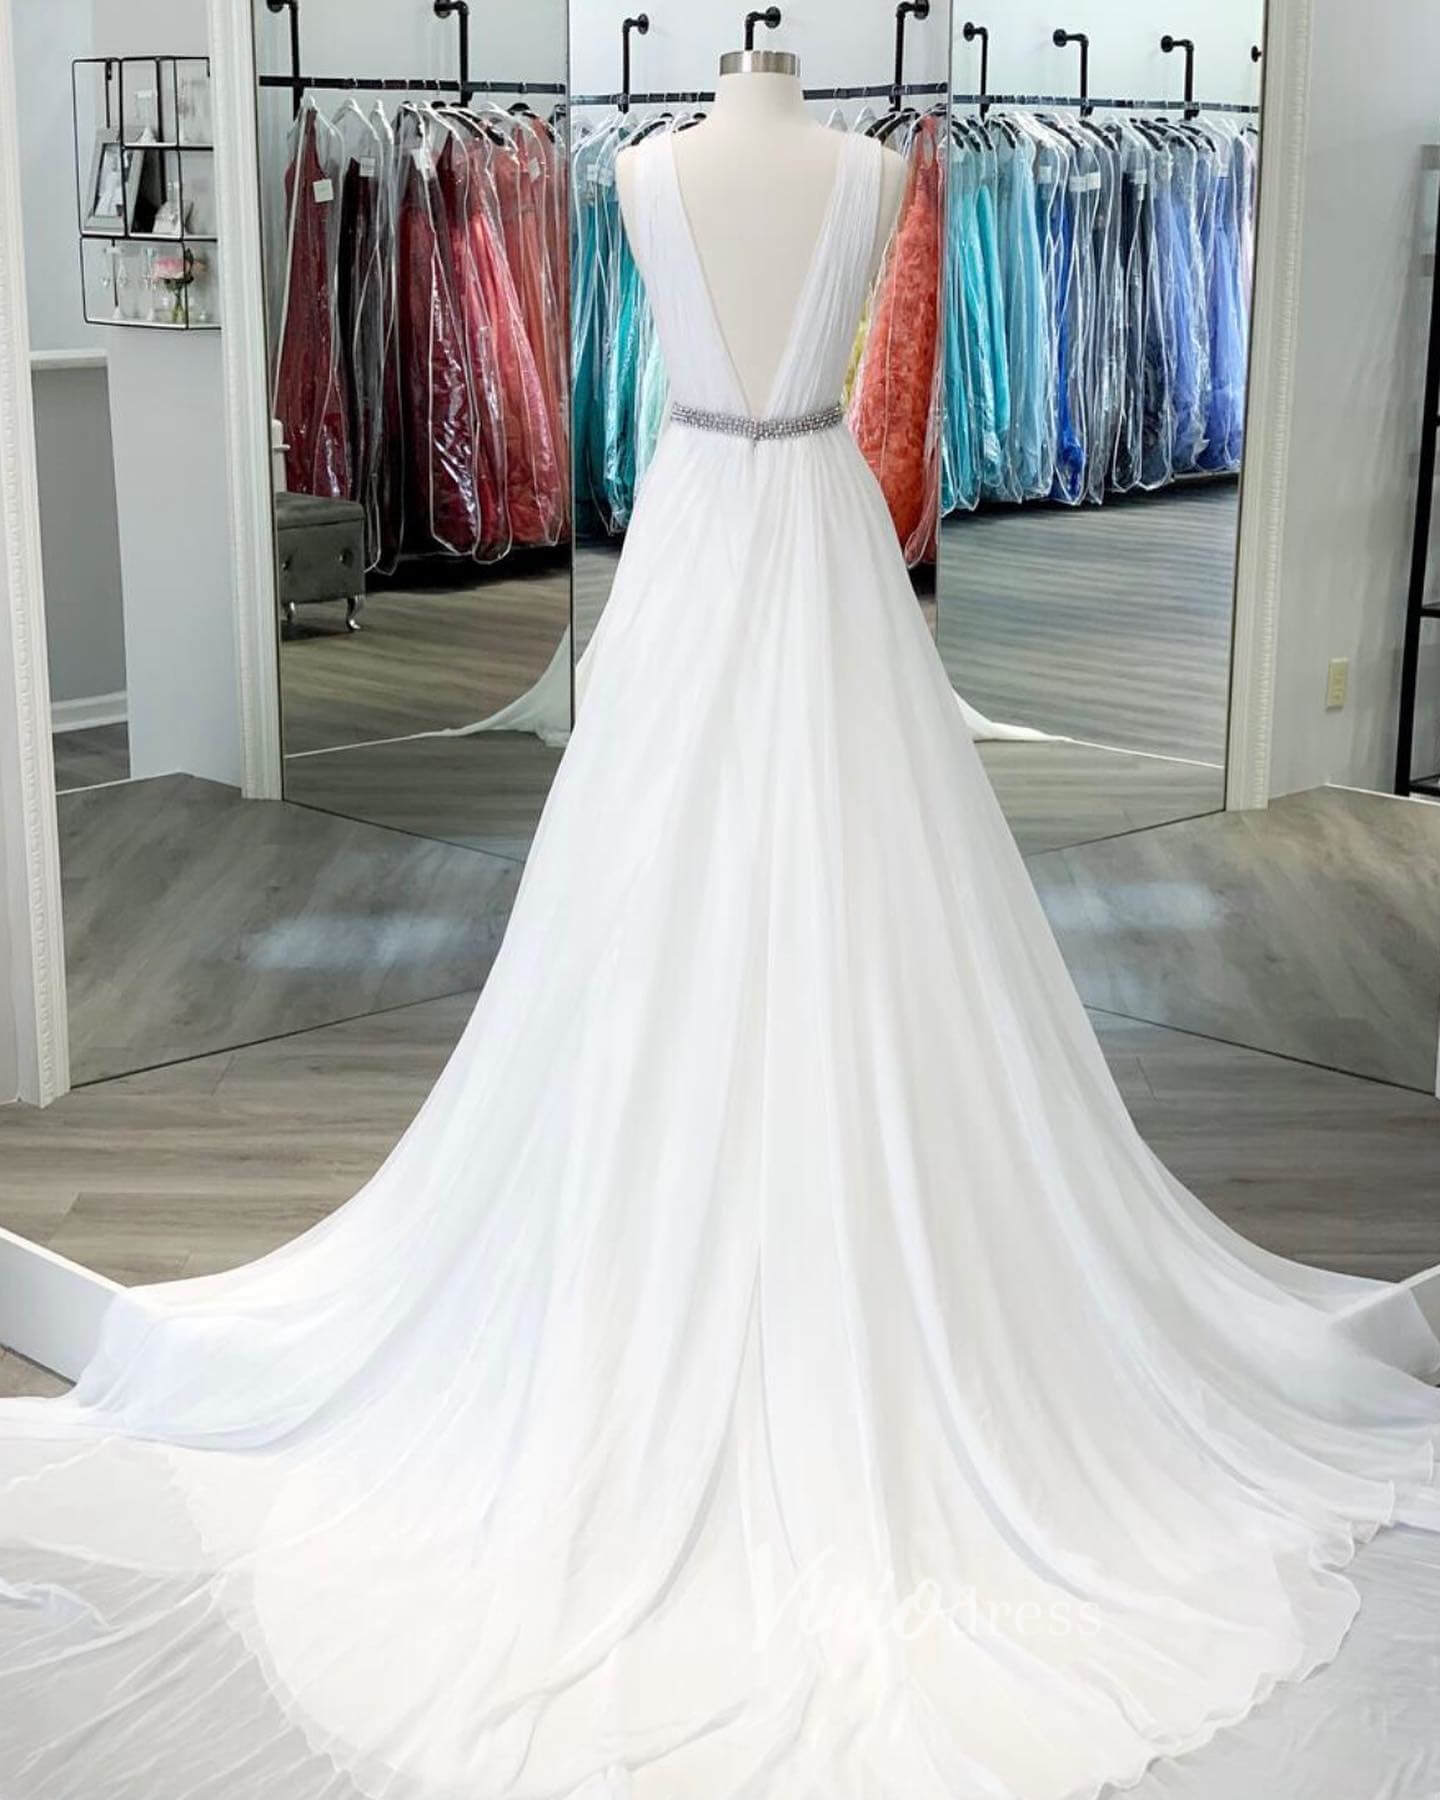 White V-Neck Prom Dresses Chiffon Wedding Dress FD3038-wedding dresses-Viniodress-Viniodress